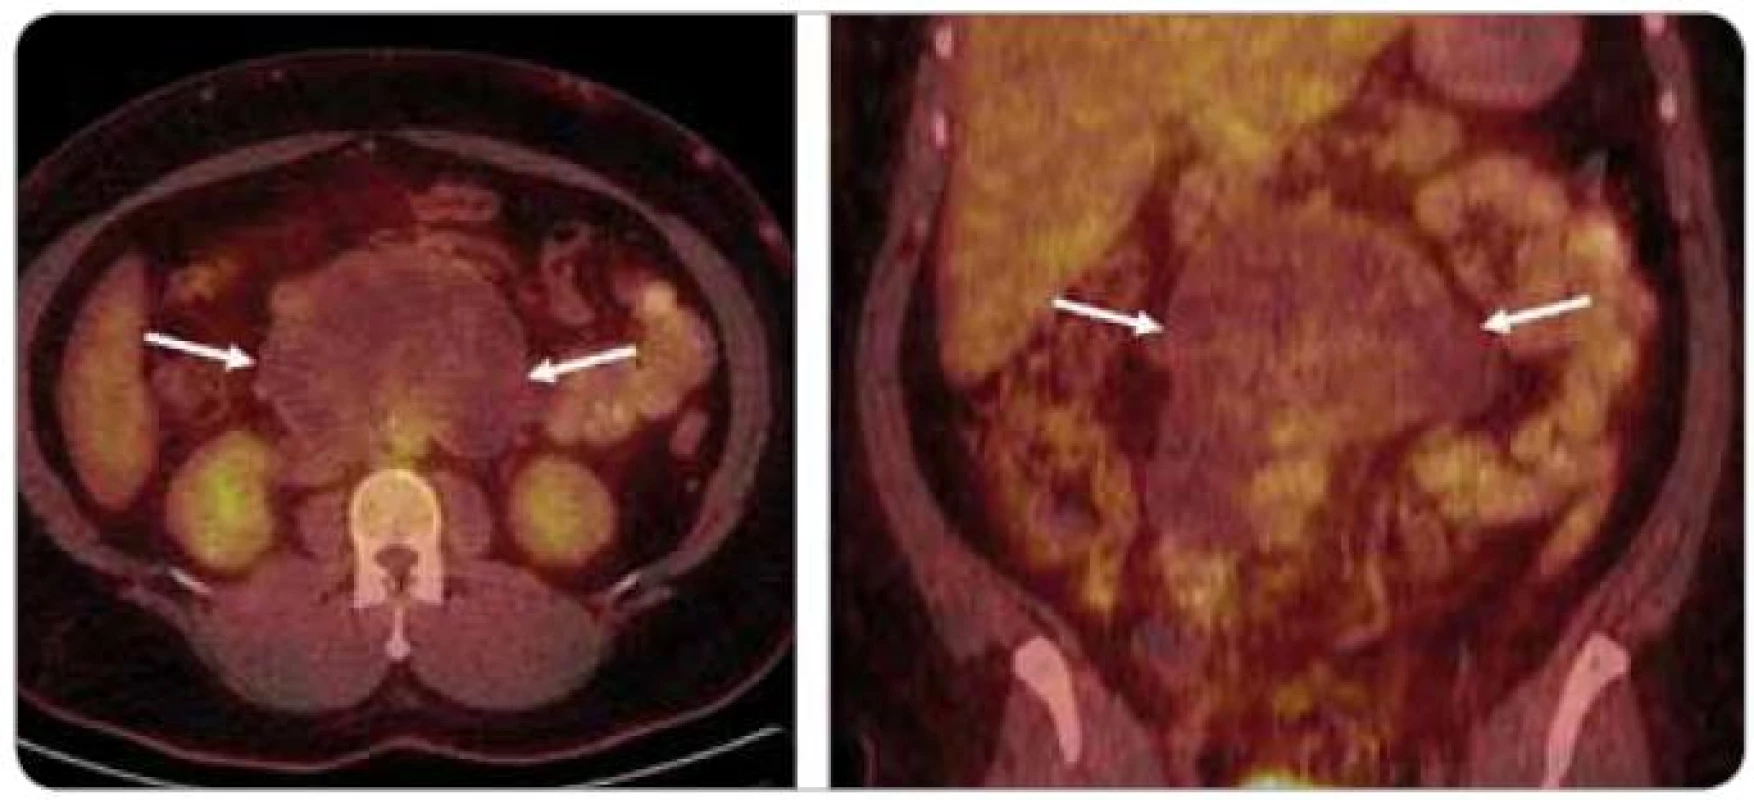 Retroperitoneální ametabolické nádorové reziduum u pacienta po vysokodávkované chemoterapii – nález je typický pro zralý teratom.